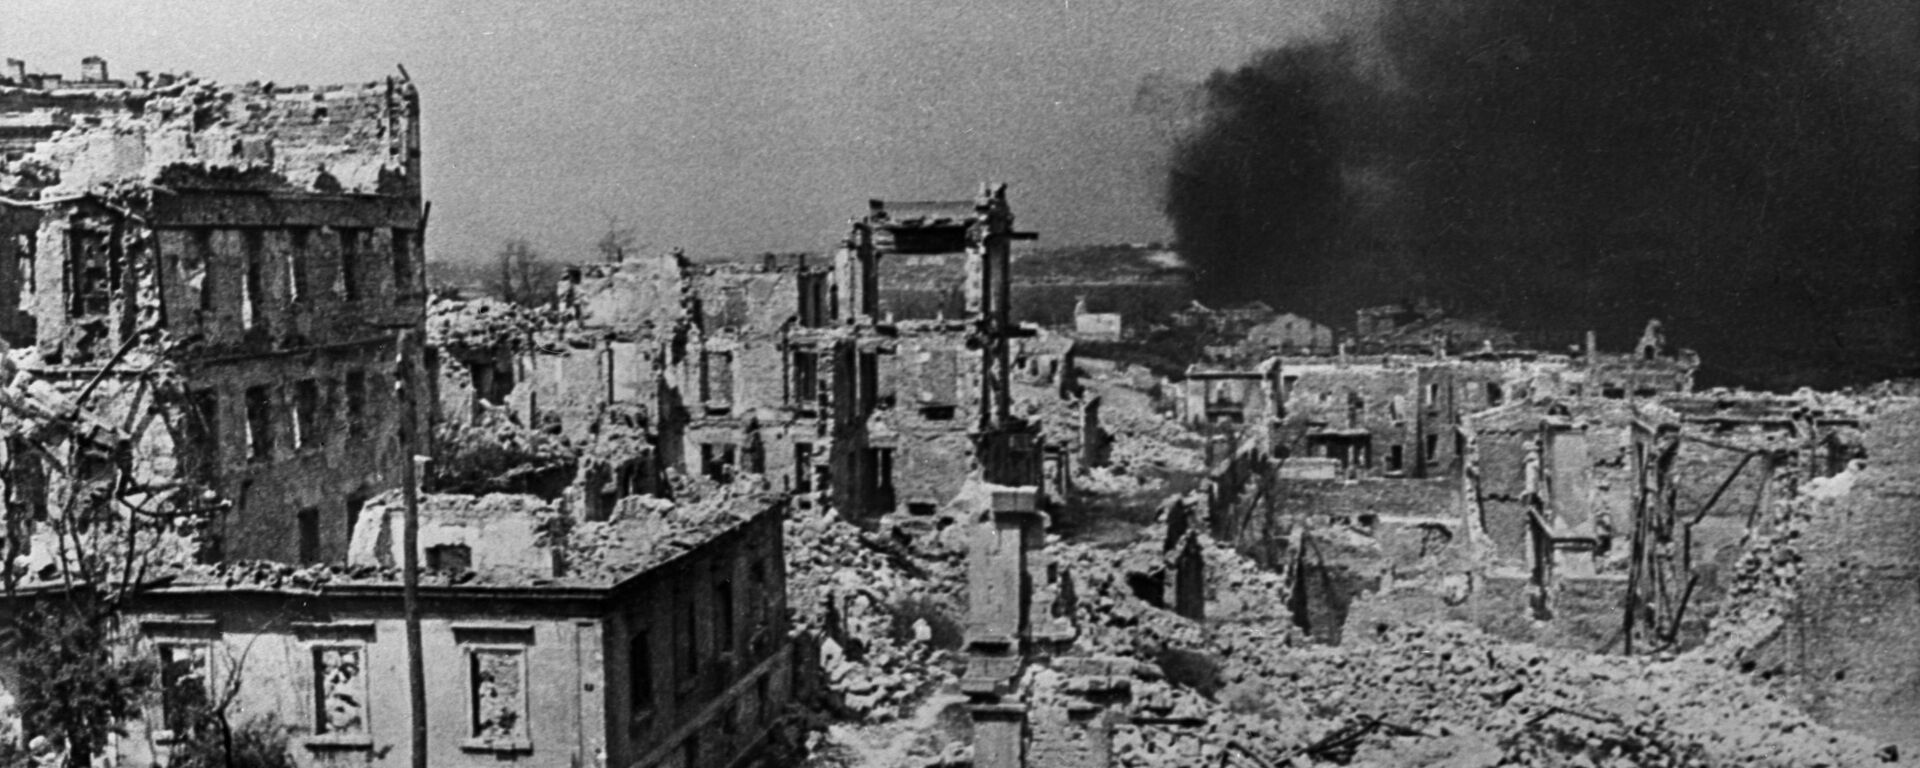 Thành phố Sevastopol sau vụ đánh bom, năm 1942. - Sputnik Việt Nam, 1920, 03.12.2021